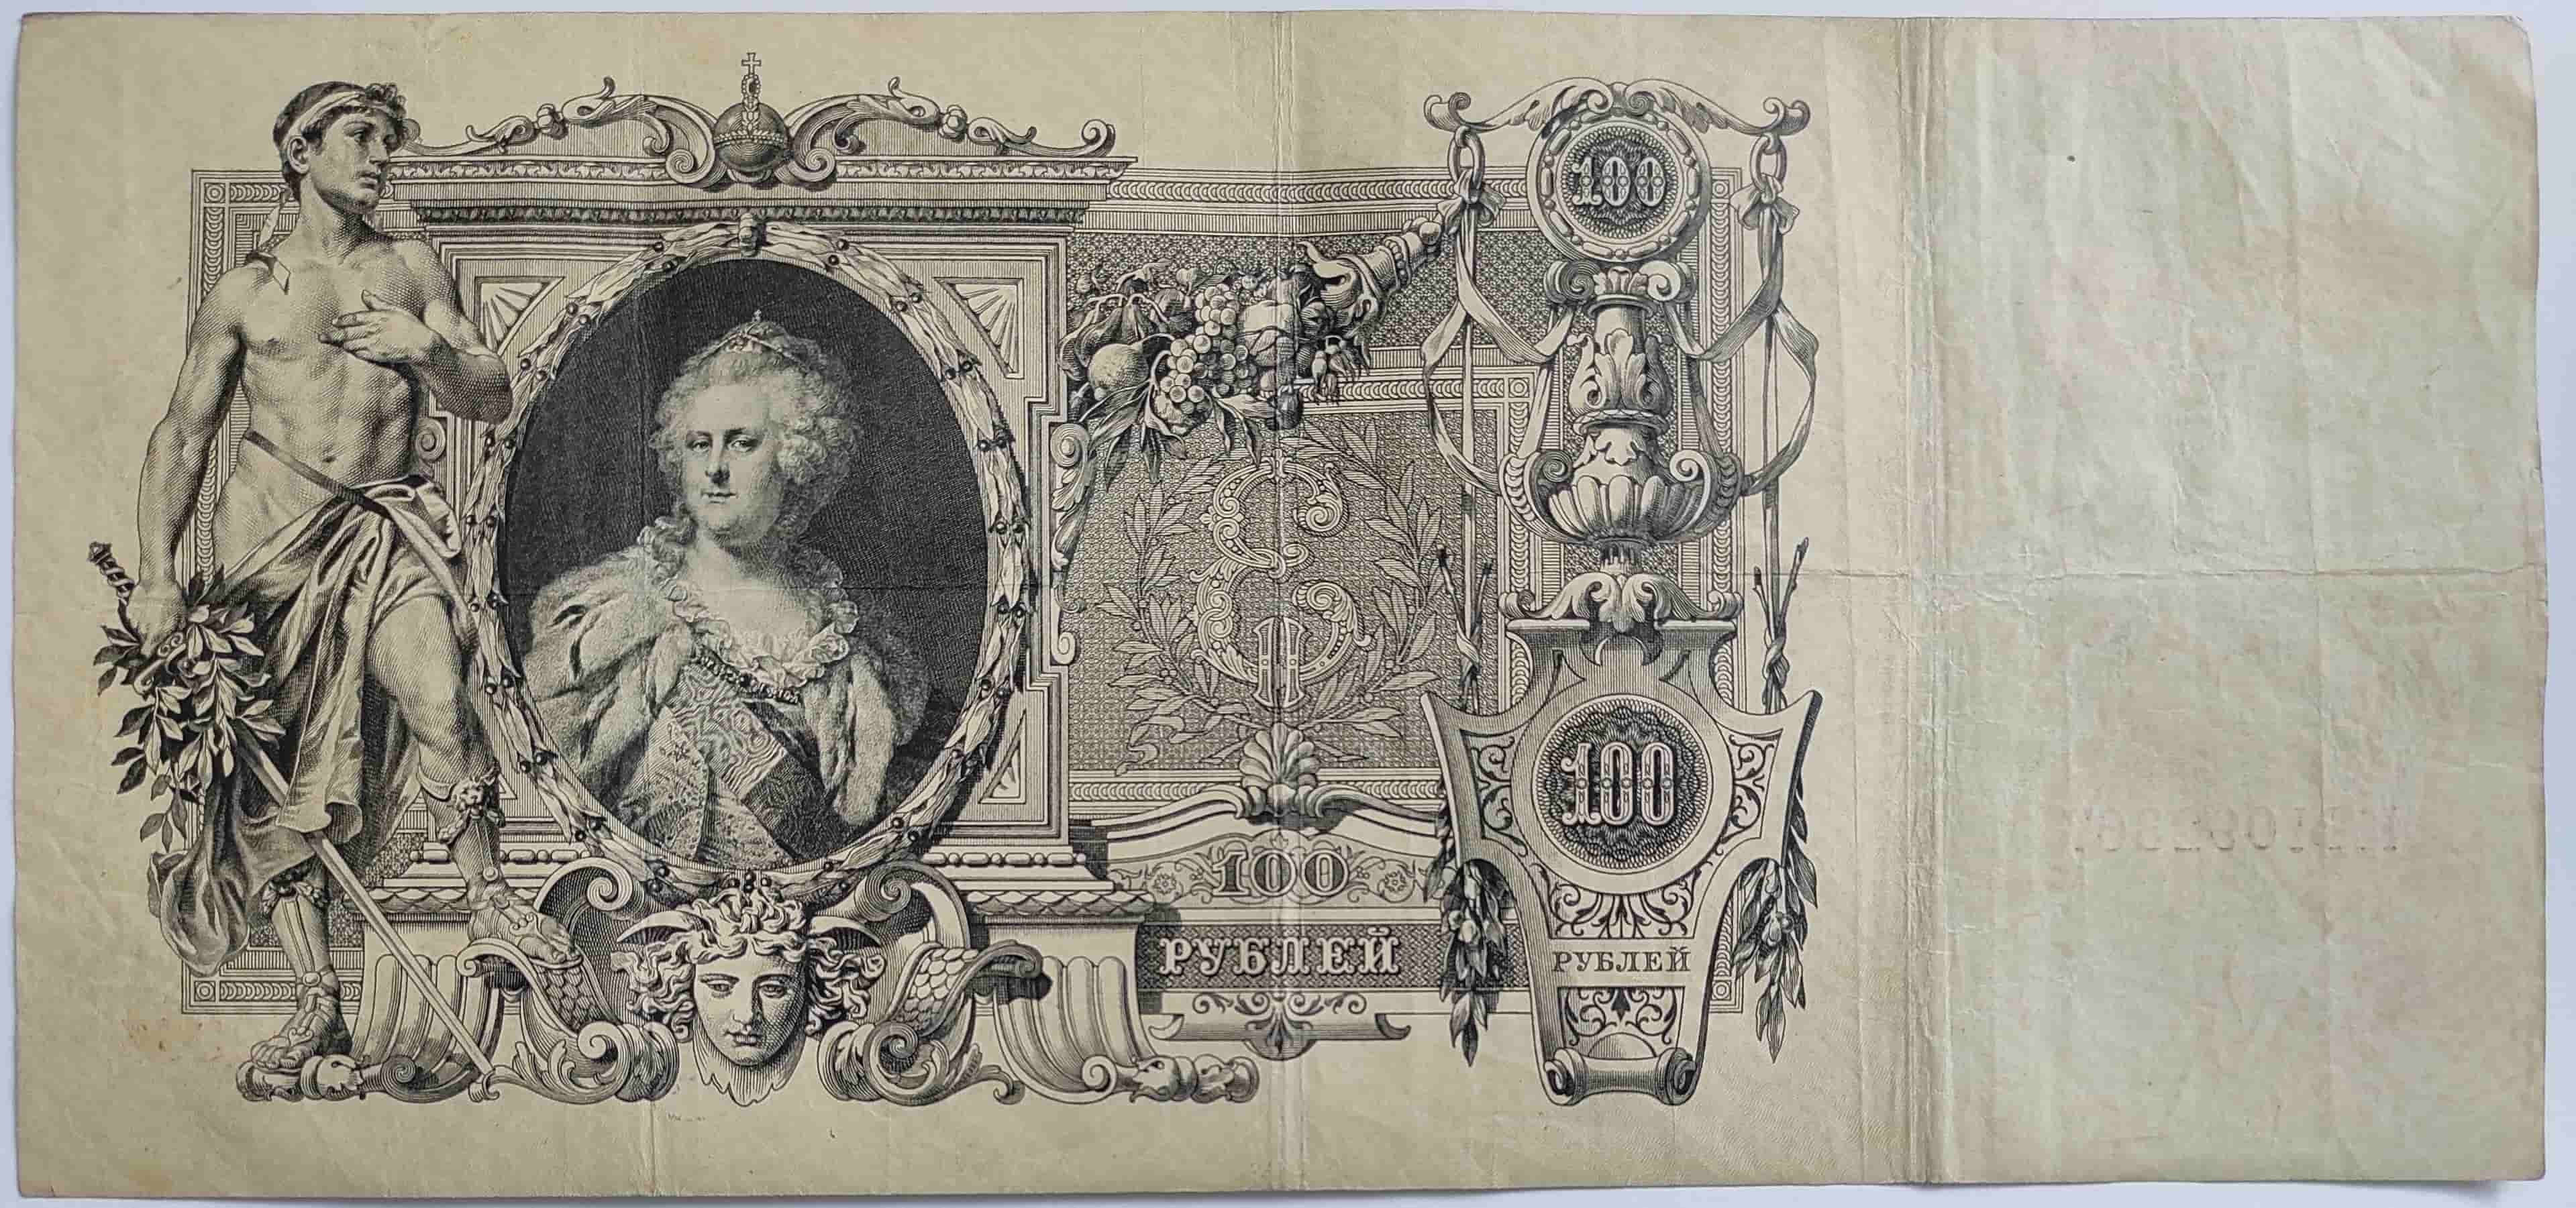 100 rubľov 1910